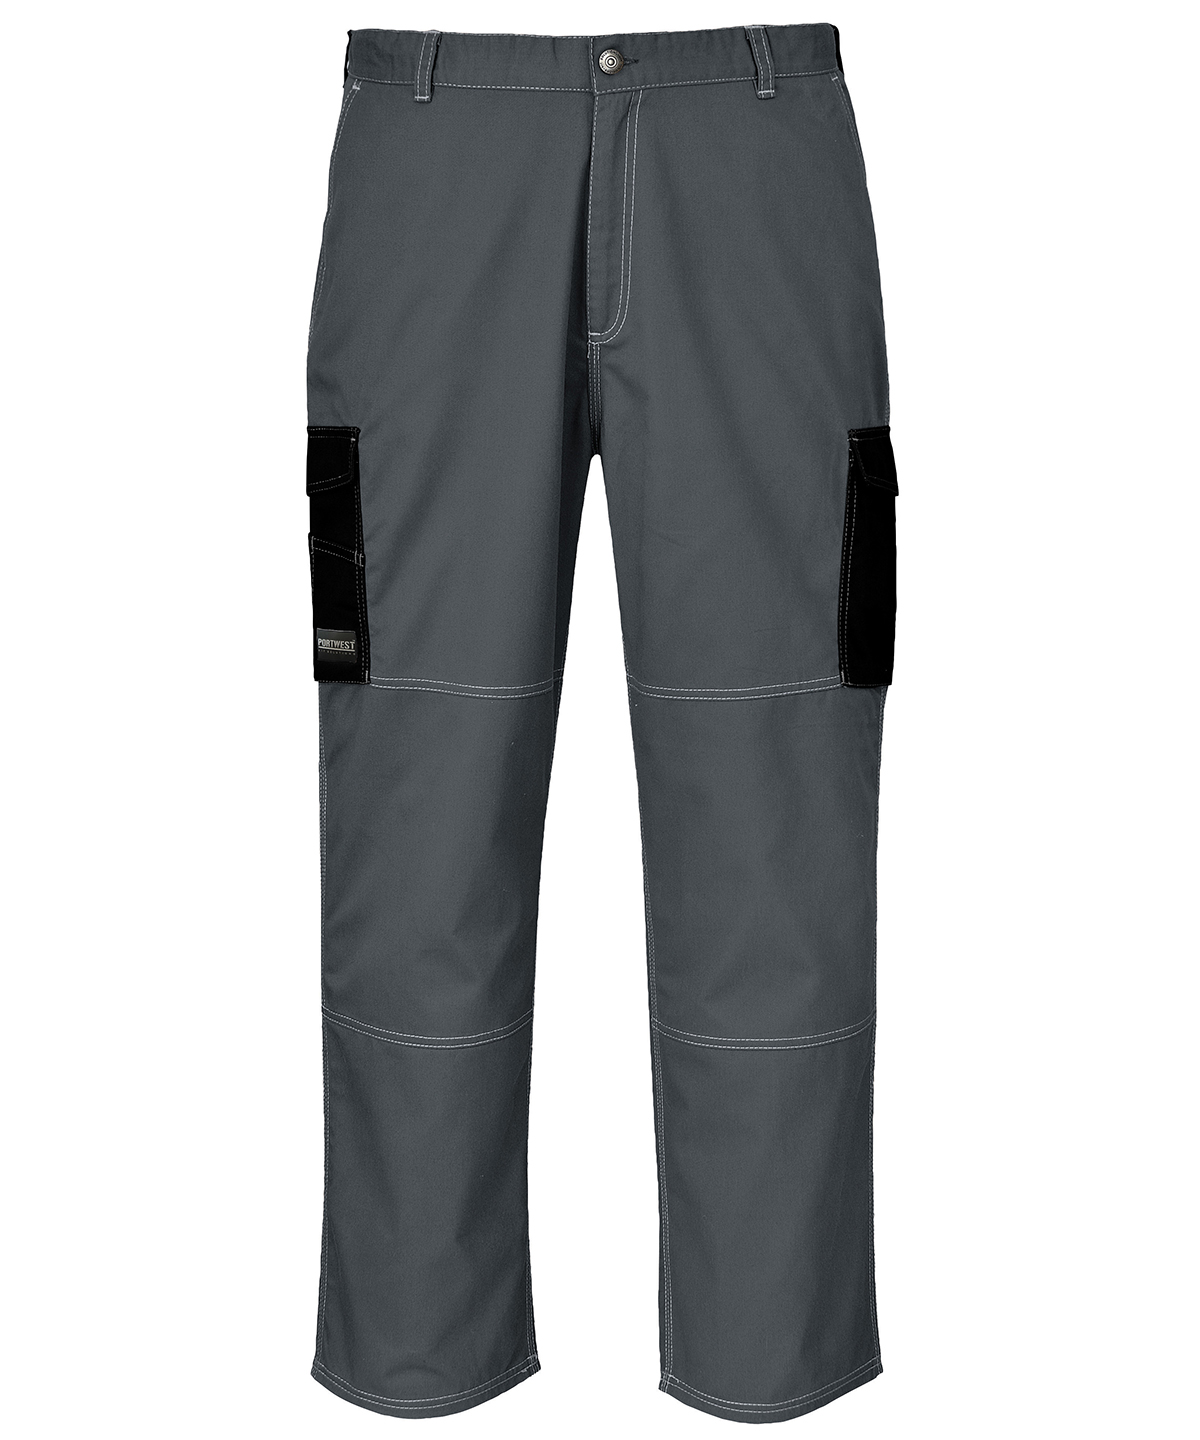 Carbon trousers (KS11)